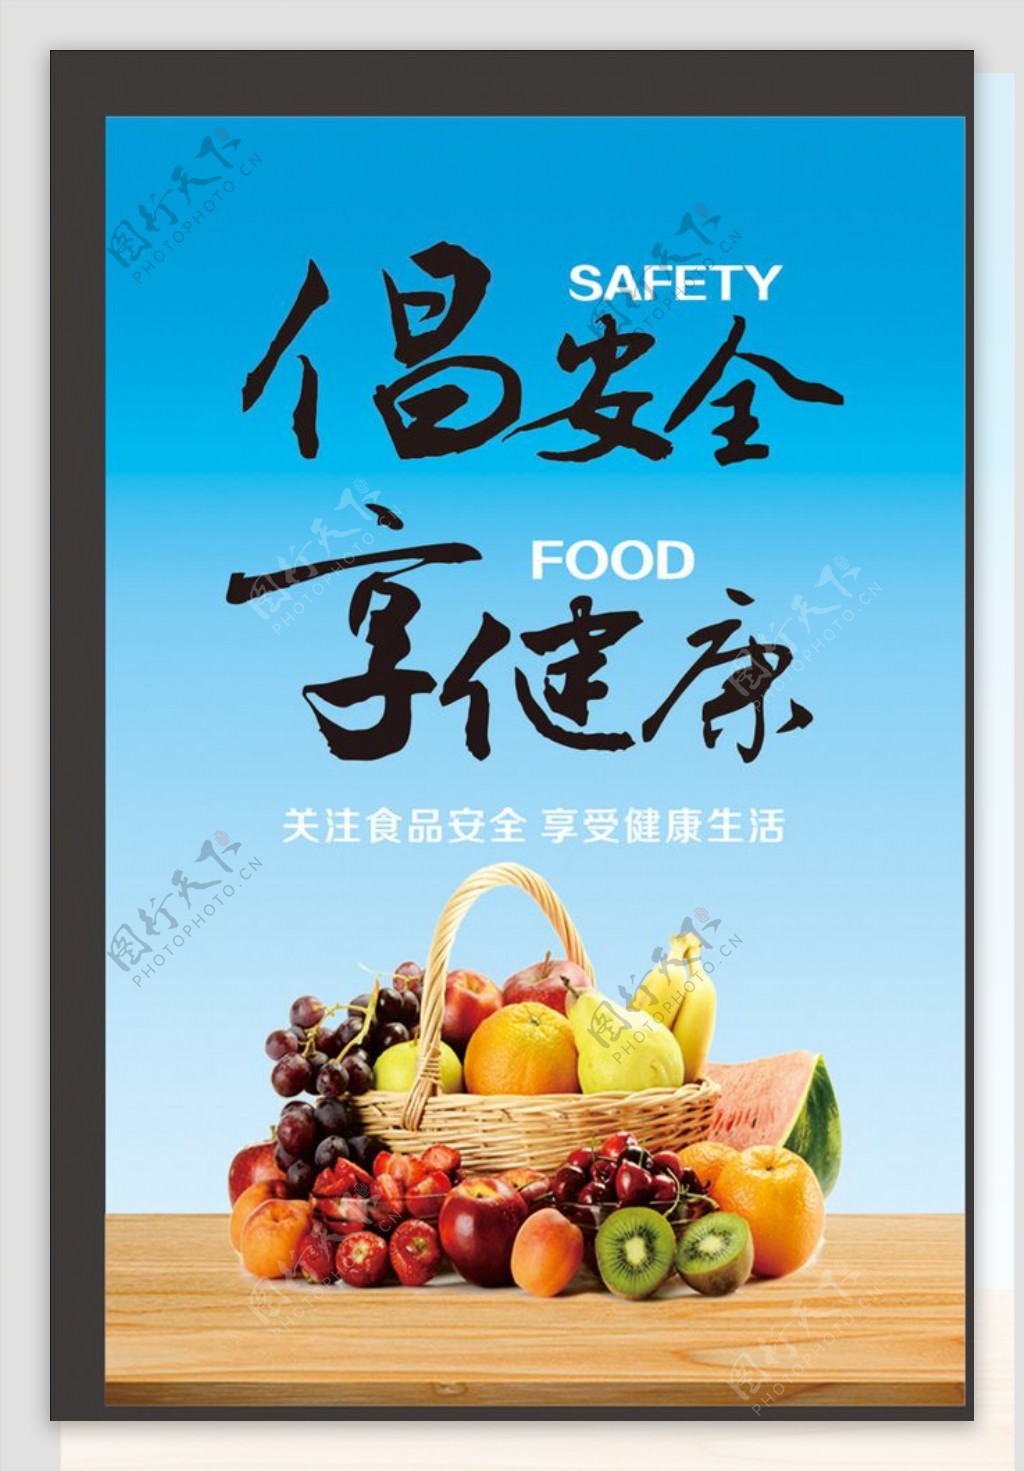 倡安全享健康食品安全宣传海报